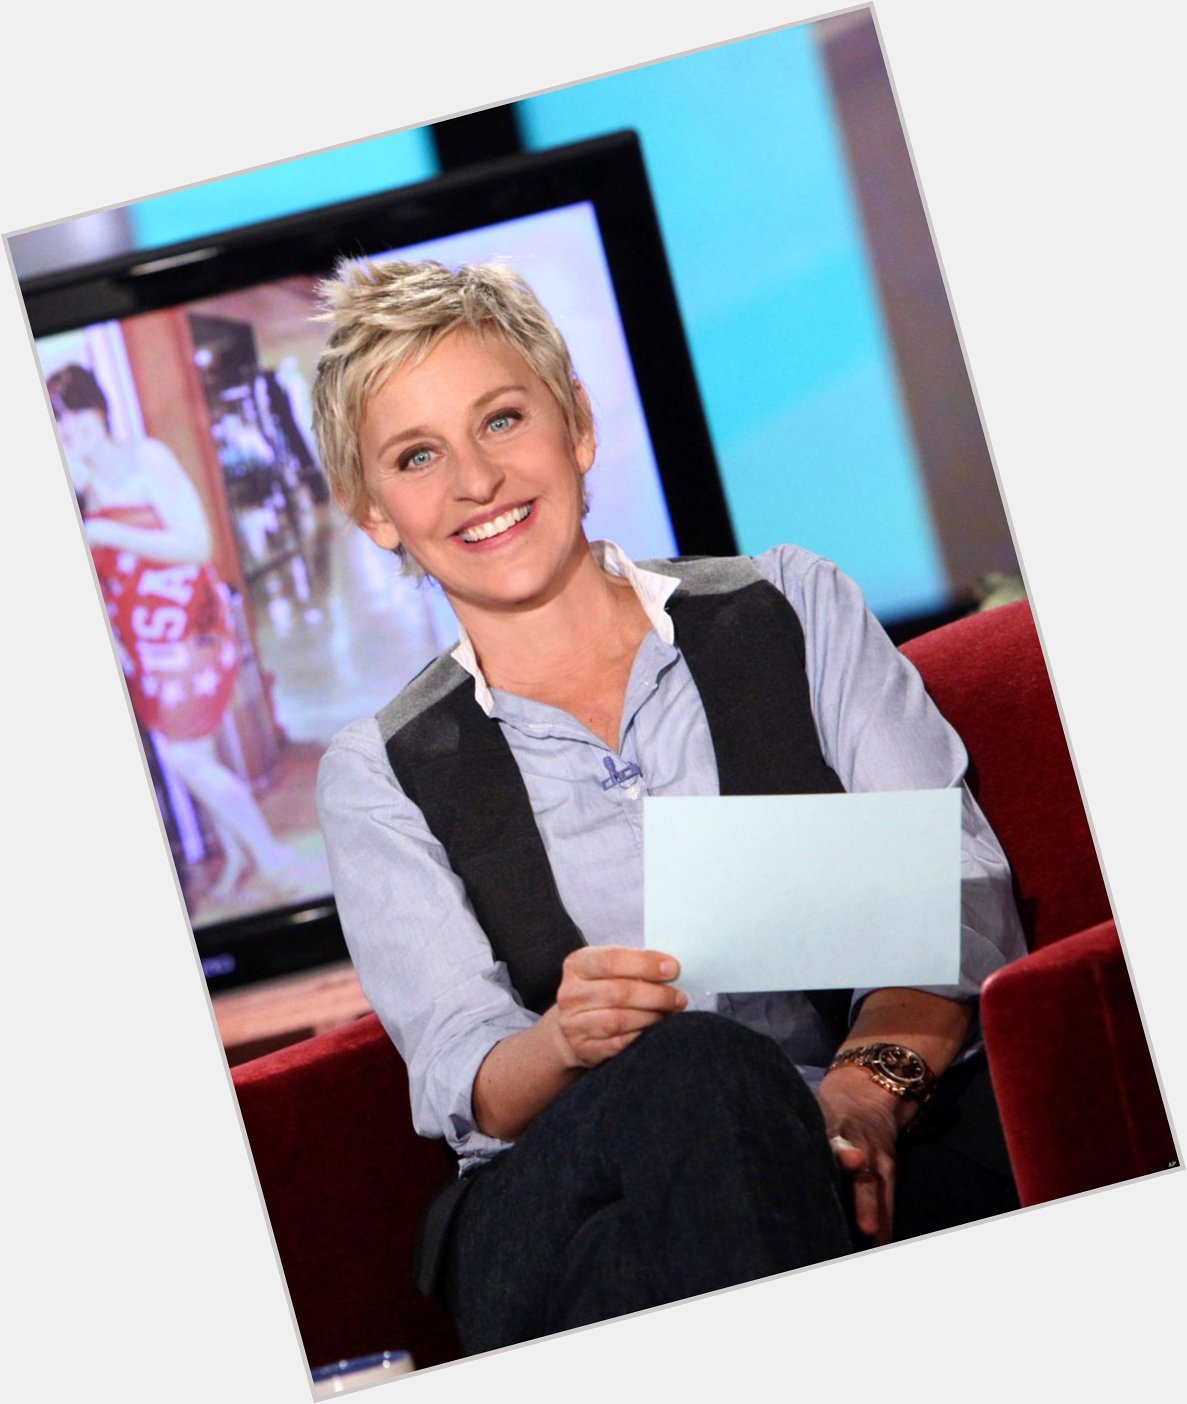 Happy Birthday to Ellen DeGeneres, who turns 57 today! 